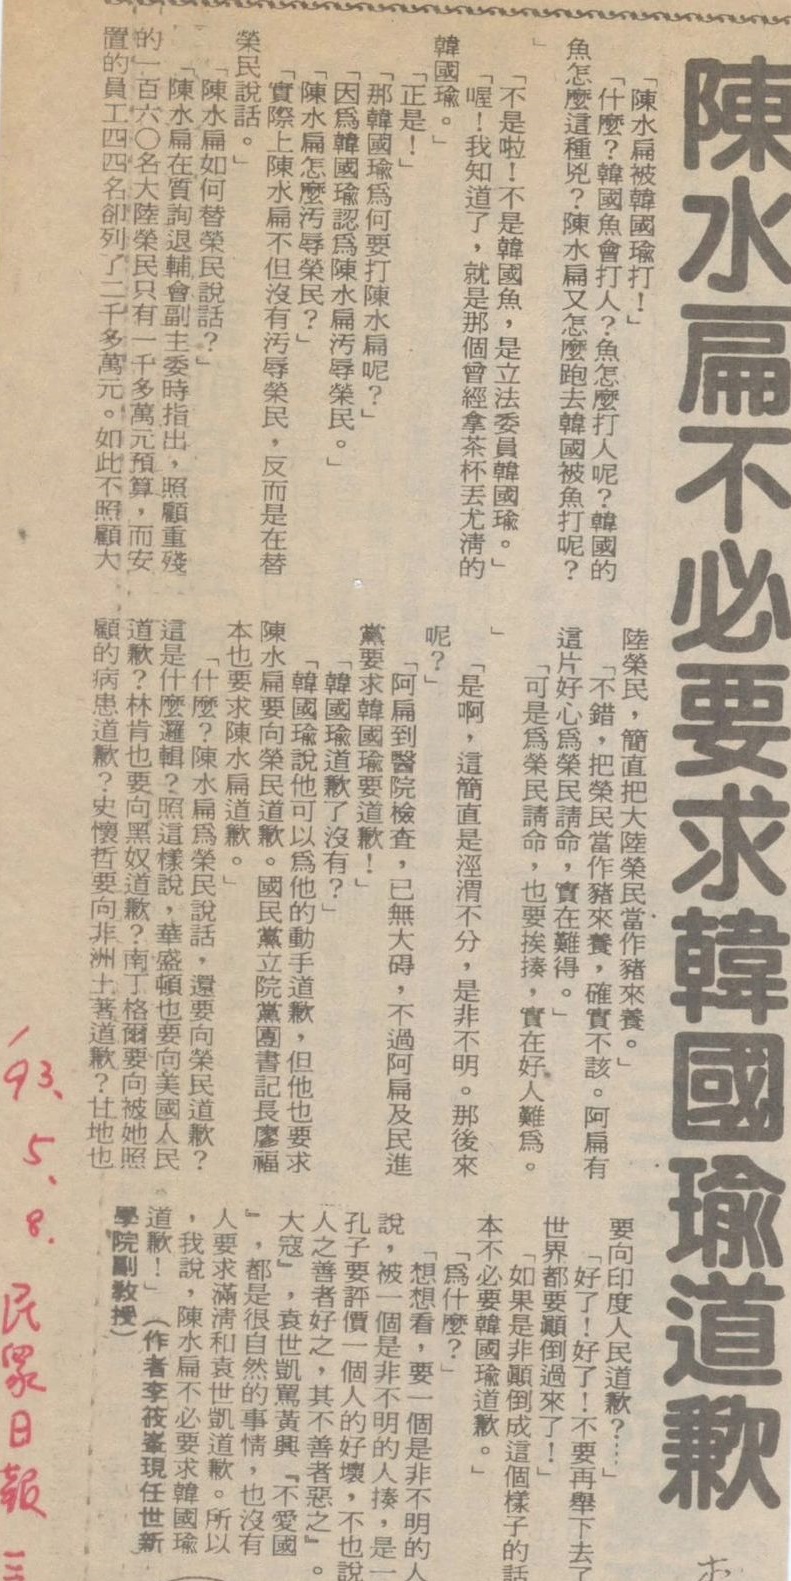 當年「火爆浪子」當上台灣國會議長